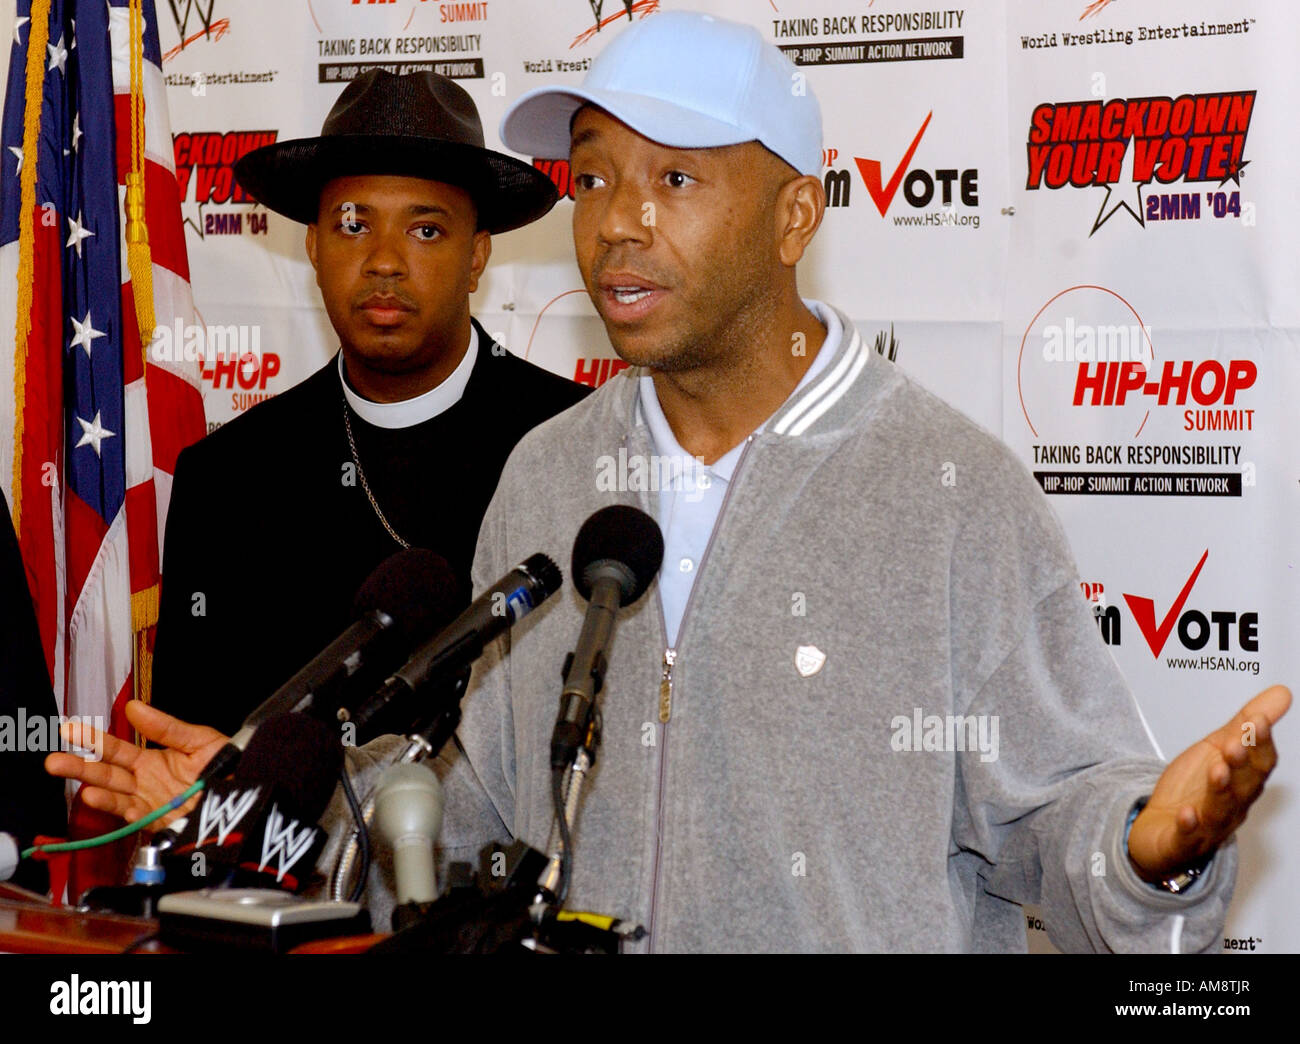 Russell Simmons Vorsitzender des Hip Hop Summit Action Network spricht während einer Pressekonferenz, die eine Partnerschaft von Hip Ho angekündigt Stockfoto